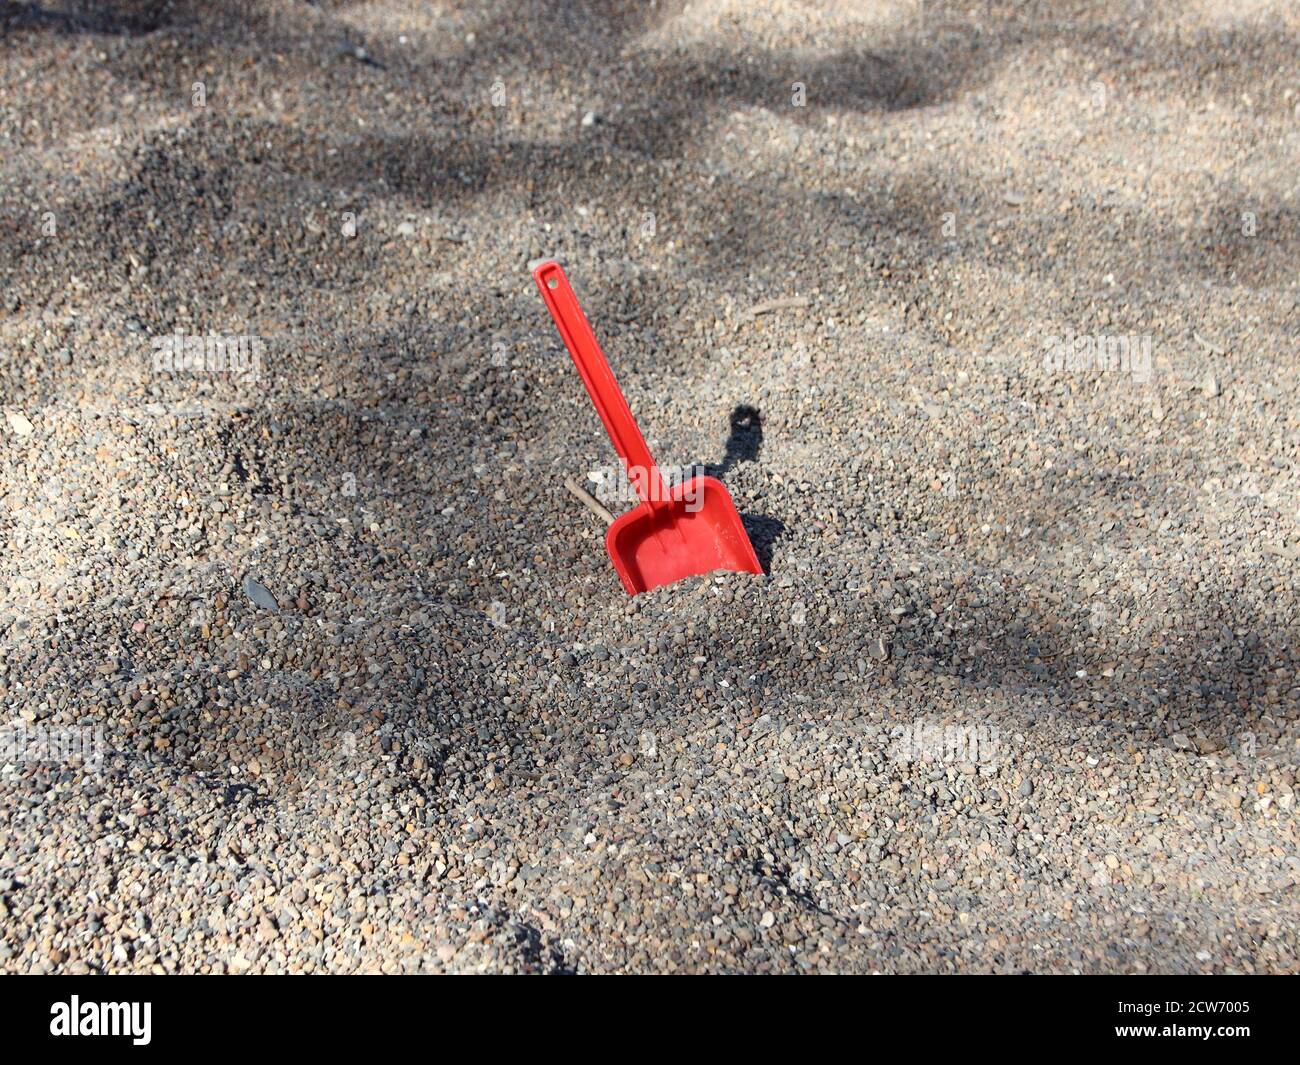 Eine einzelne rote Schaufel, die in einer Sandkiste des Kindergartens zurückgelassen wurde, die rote Schaufel kontrastiert den grauen Kies gewaltig. Stockfoto